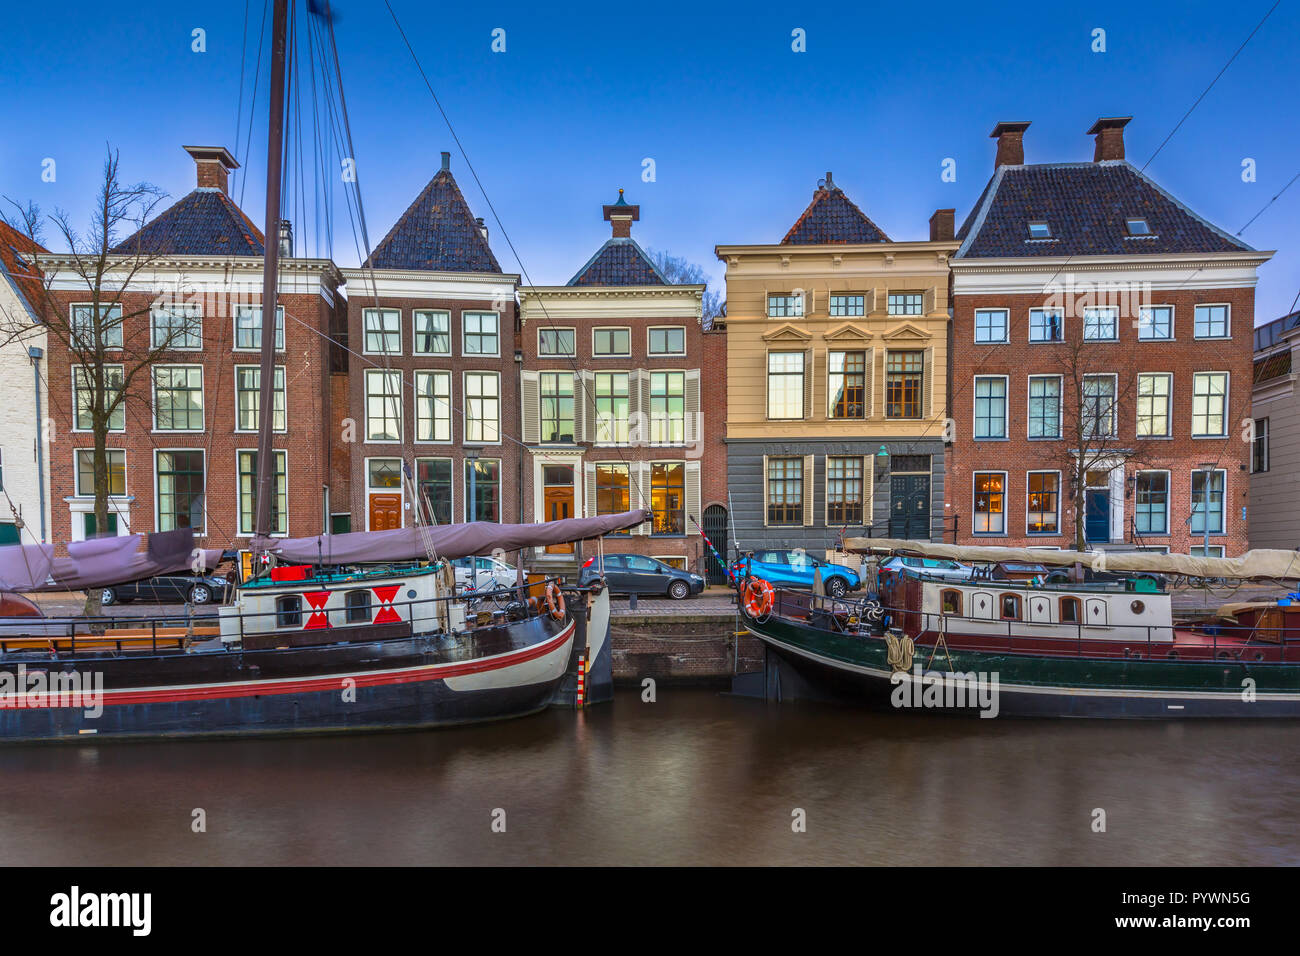 Bateaux et bâtiments historiques à Hoge der Aa quay dans le centre-ville de Groningen, Pays-Bas Banque D'Images